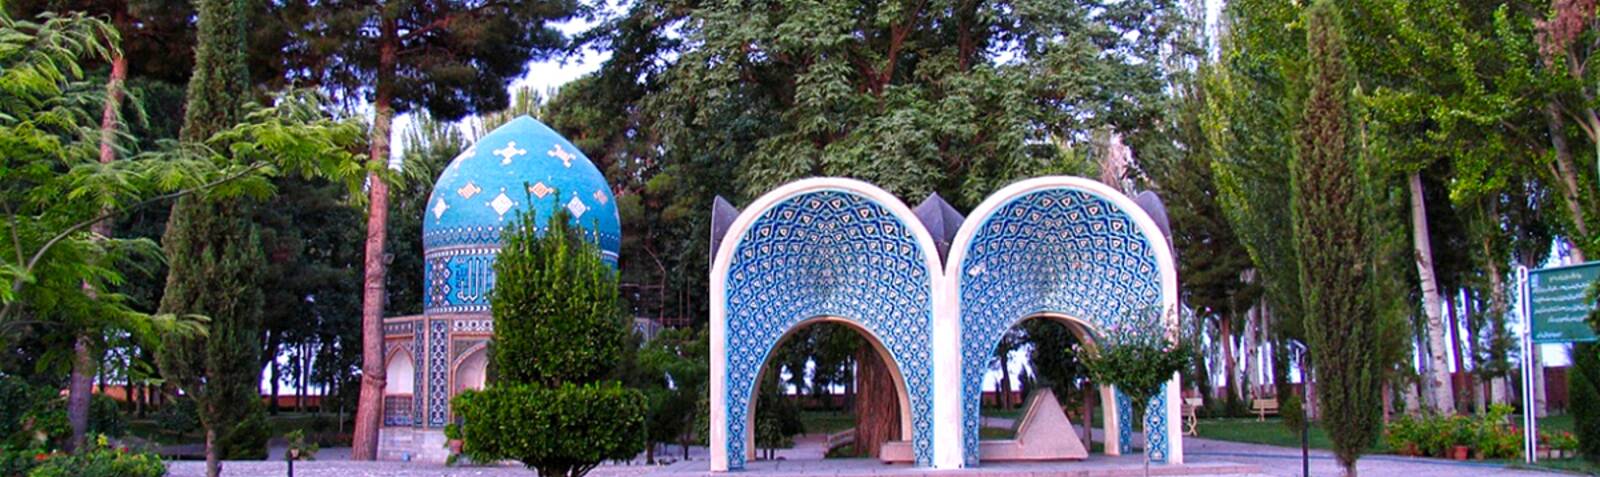 Kamal-ol-Molk Mausoleum